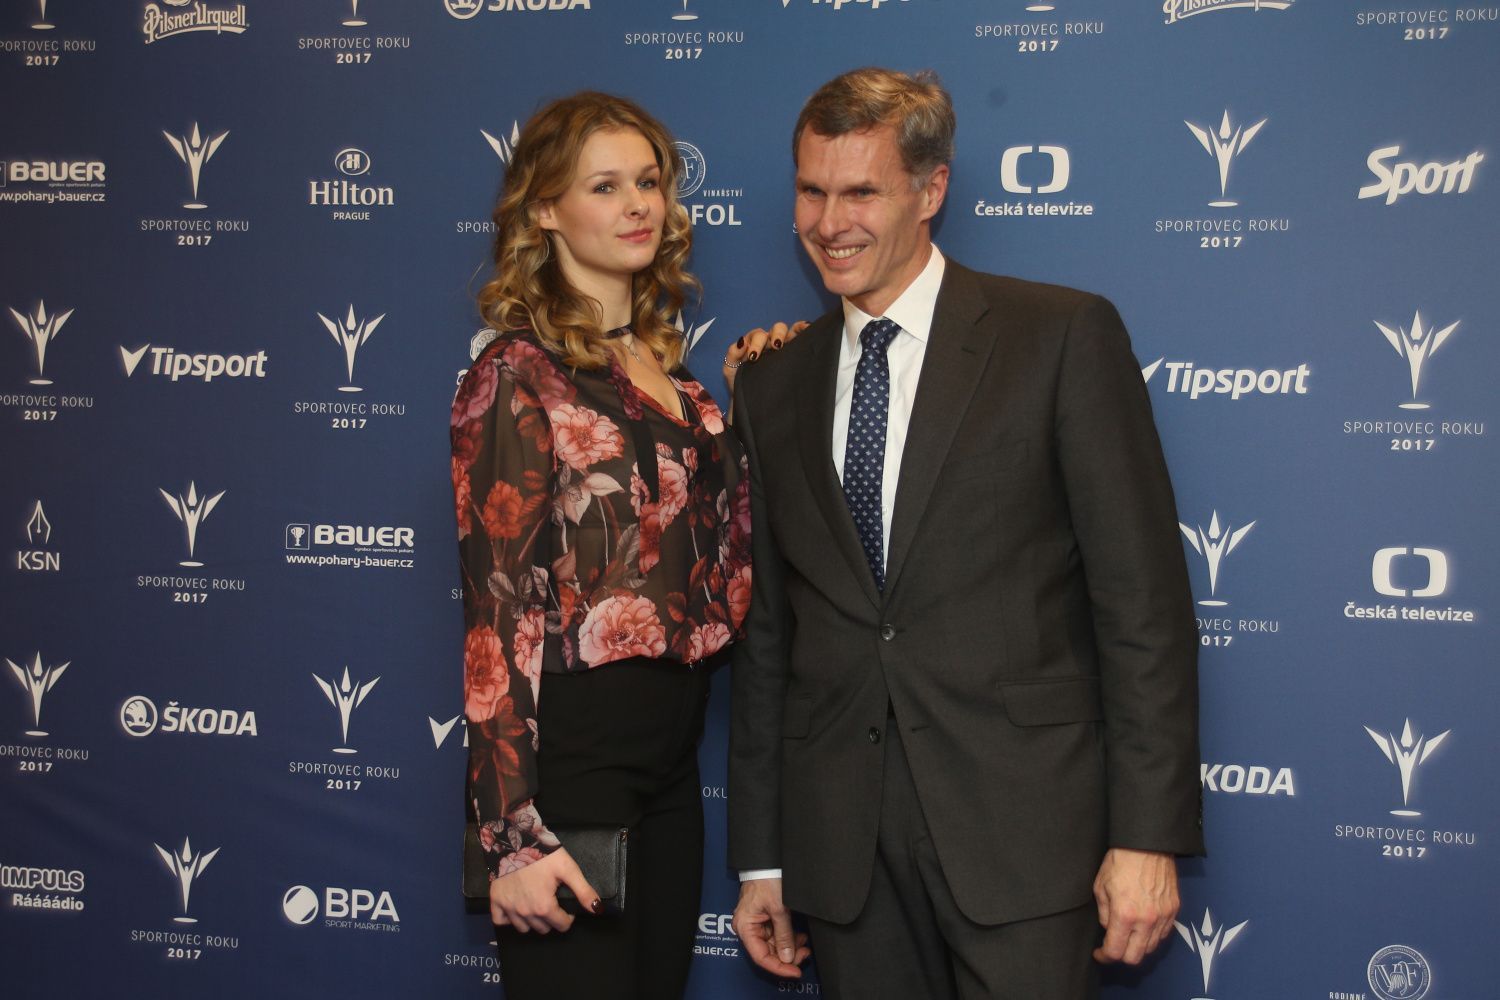 Sportovec roku 2017: Jiří Kejval s manželkou